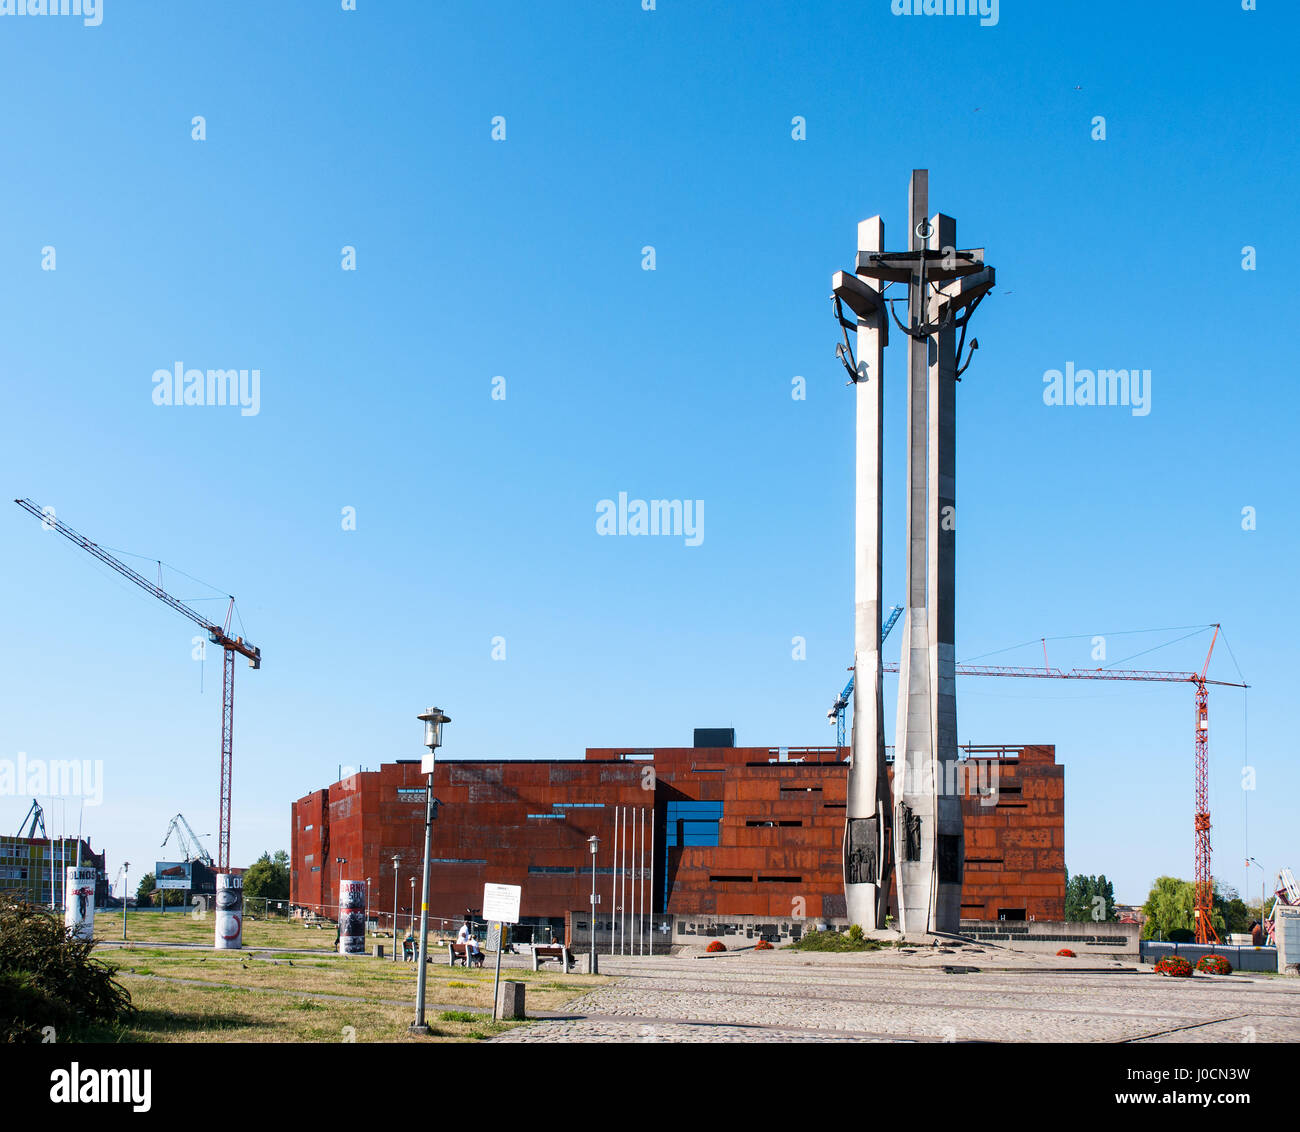 GDANSK, Pologne - 10 juillet 2014 : Centre de la solidarité européenne (ESC) et Monument de la solidarité à Gdansk, Pologne, commémorant les morts shipyard worke Banque D'Images